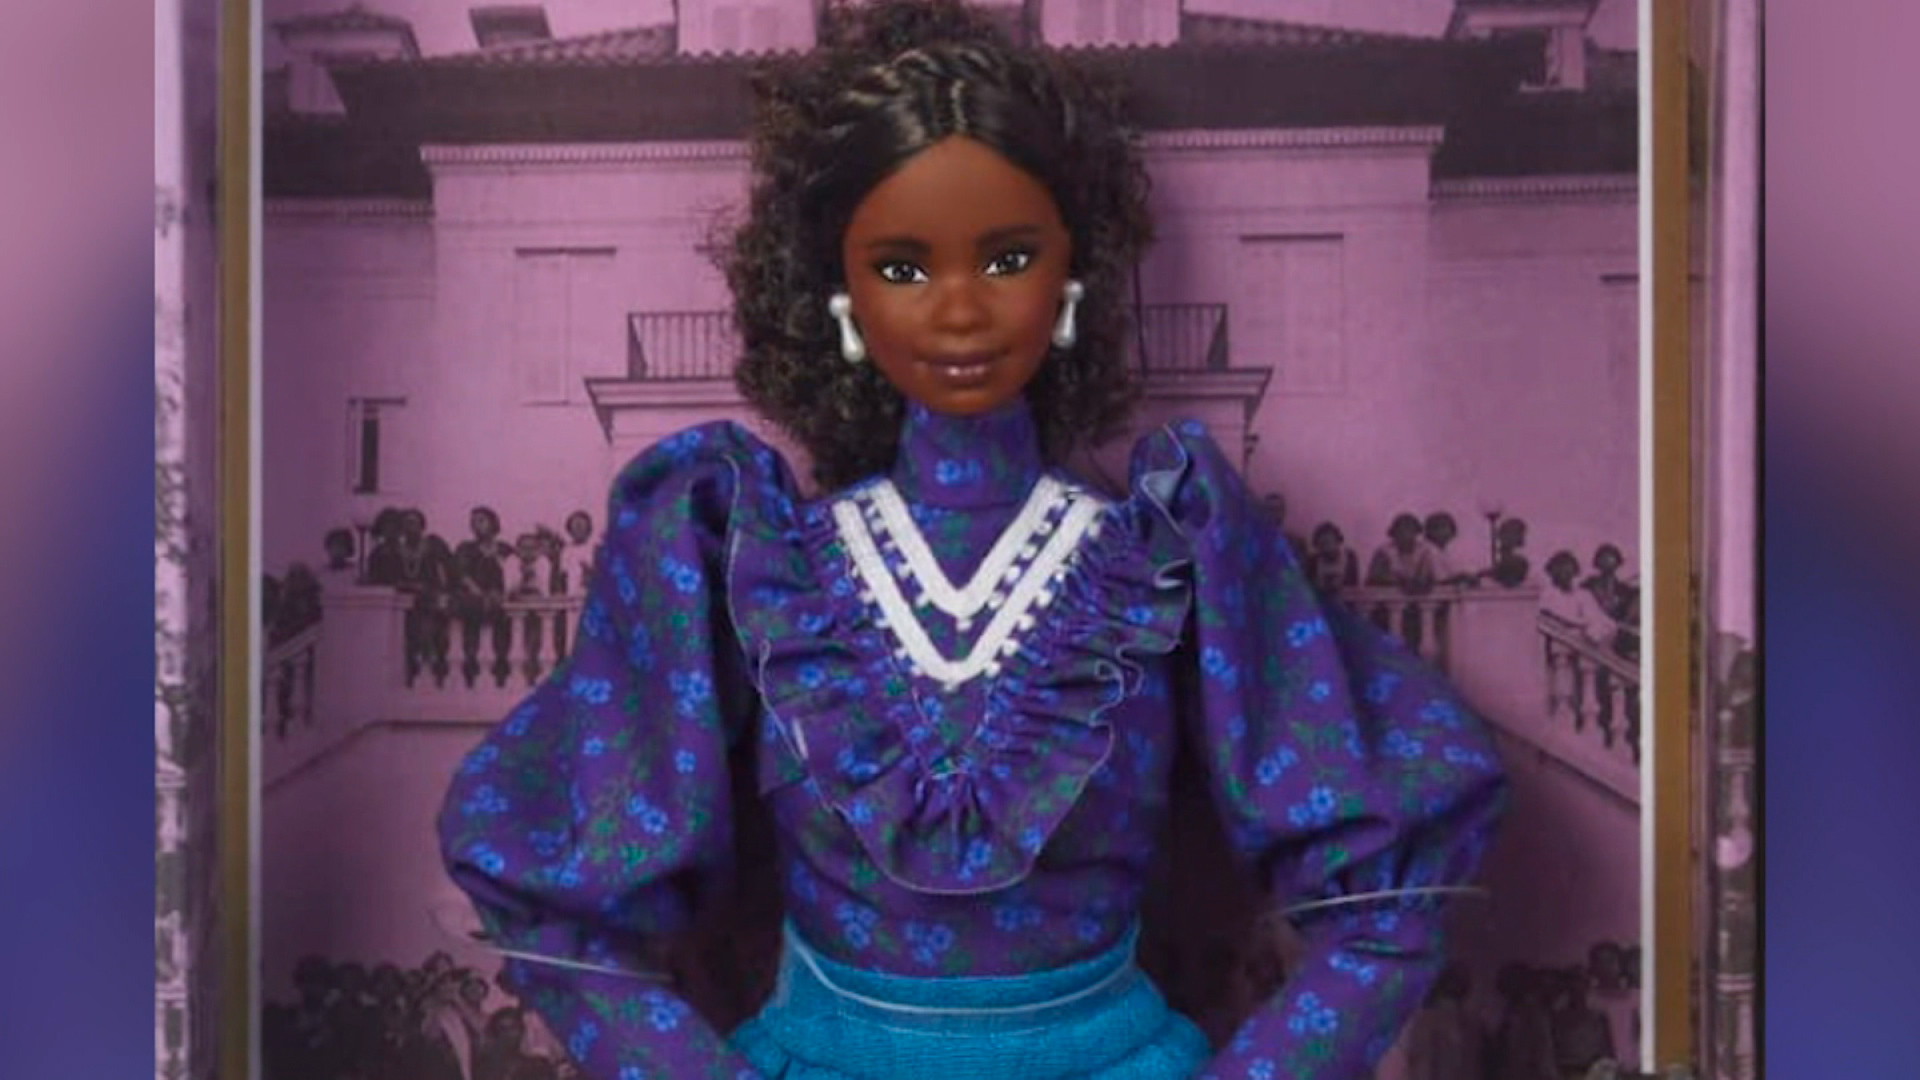 se inspira en Madam C.J. Walker. Mira por qué Mattel creó muñeca honrar a esta mujer - CNN Video